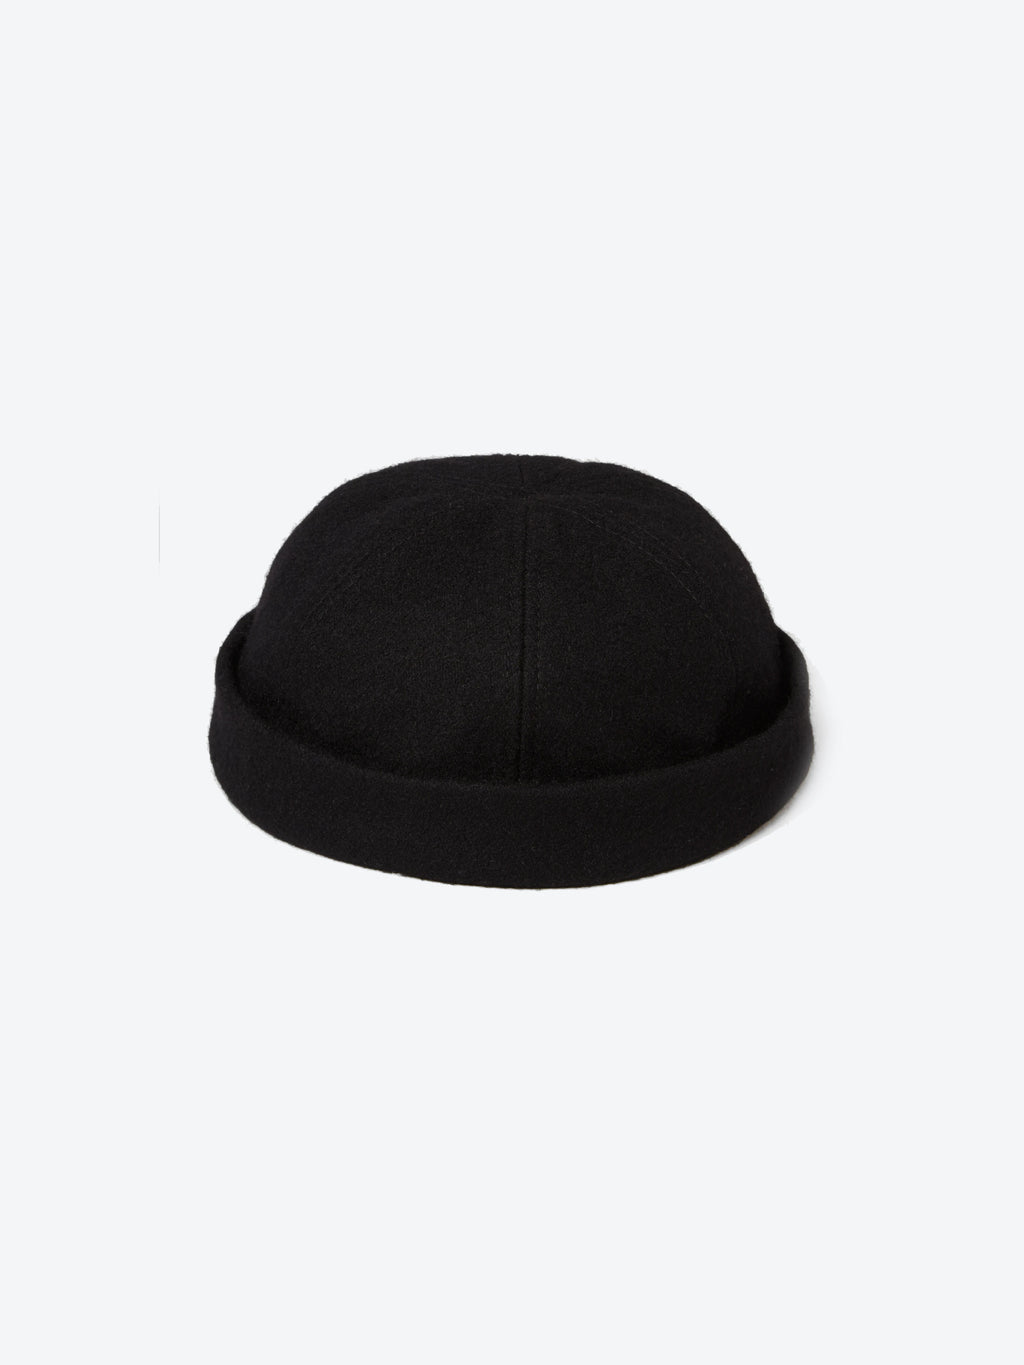 Wool Docker Cap - Black